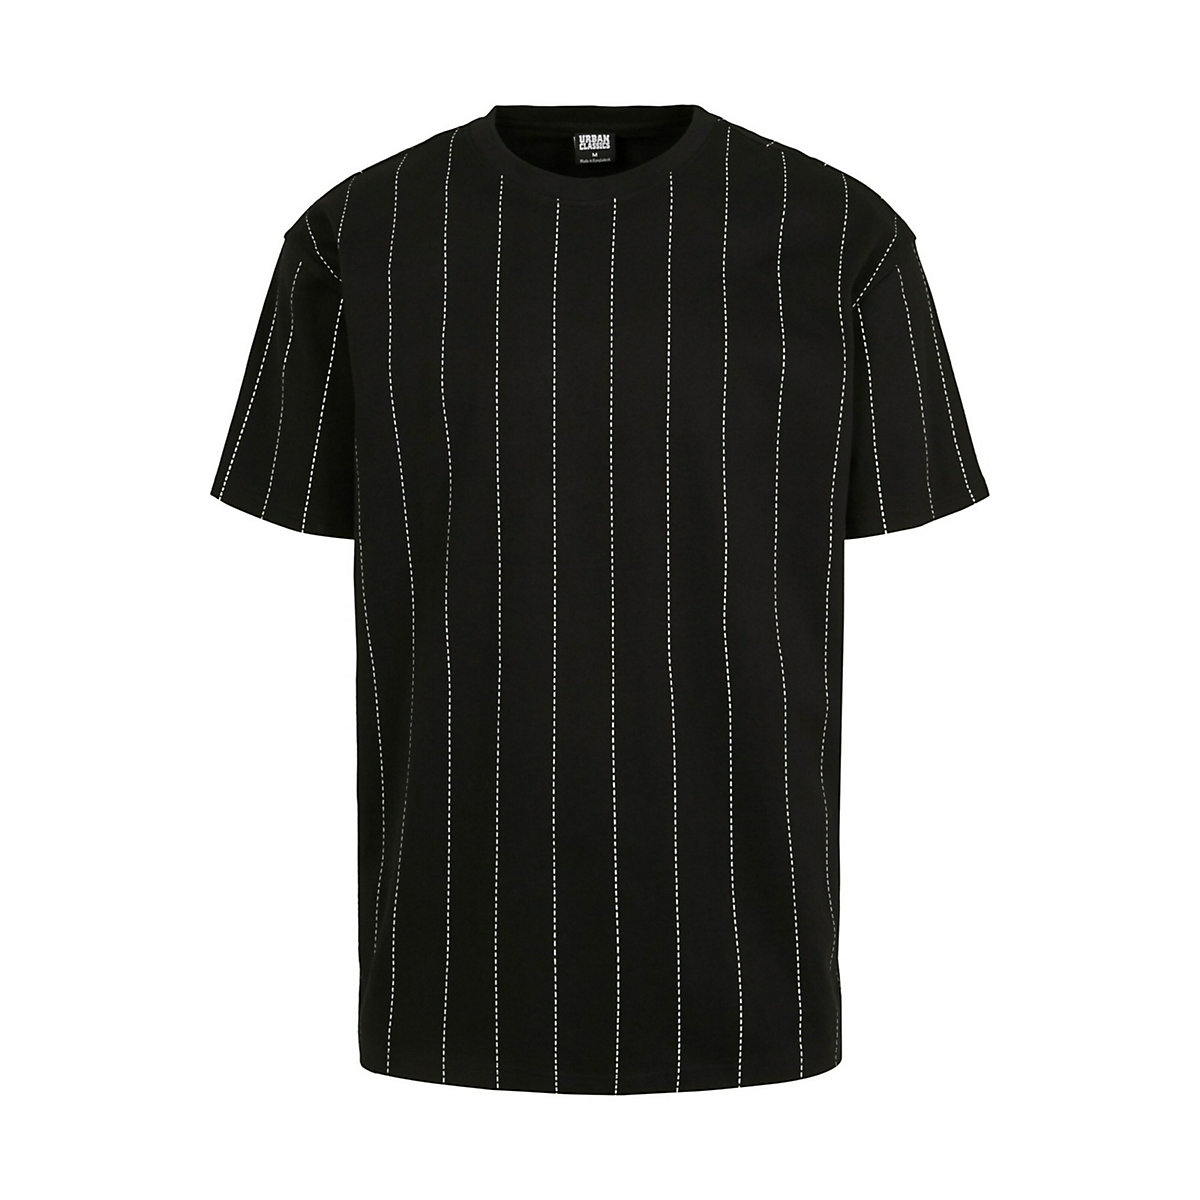 Urban Classics Shirt schwarz/weiß YN6828